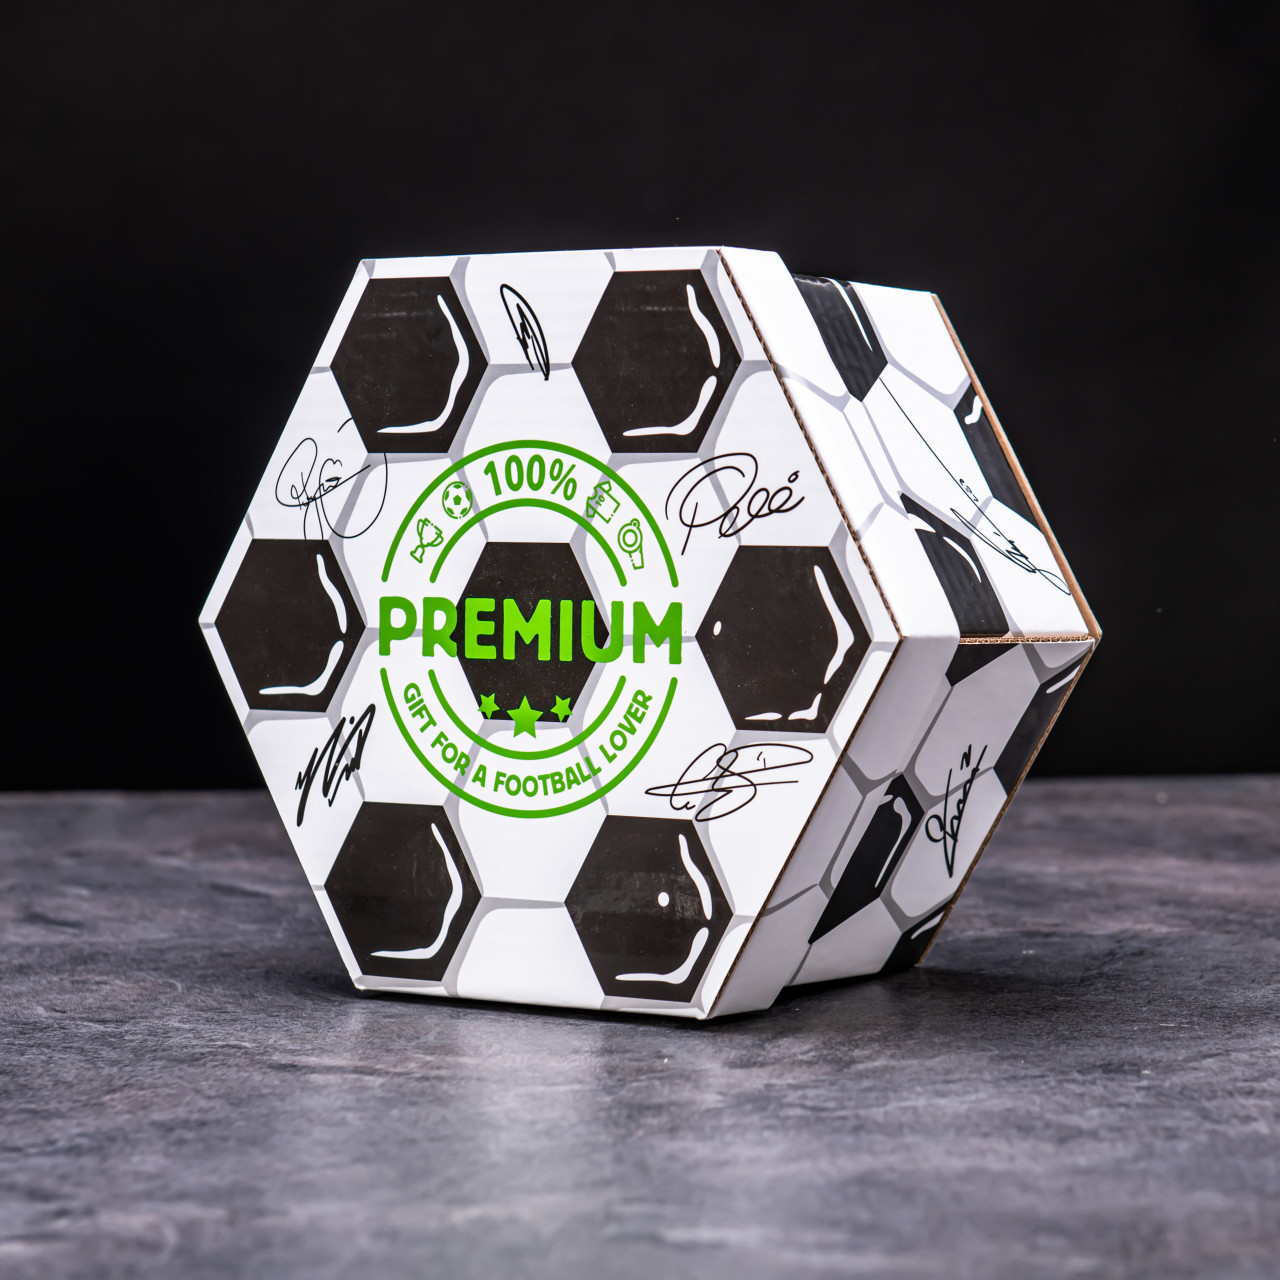 Hexagon plný luxusní péče o vousy - Fotbalový